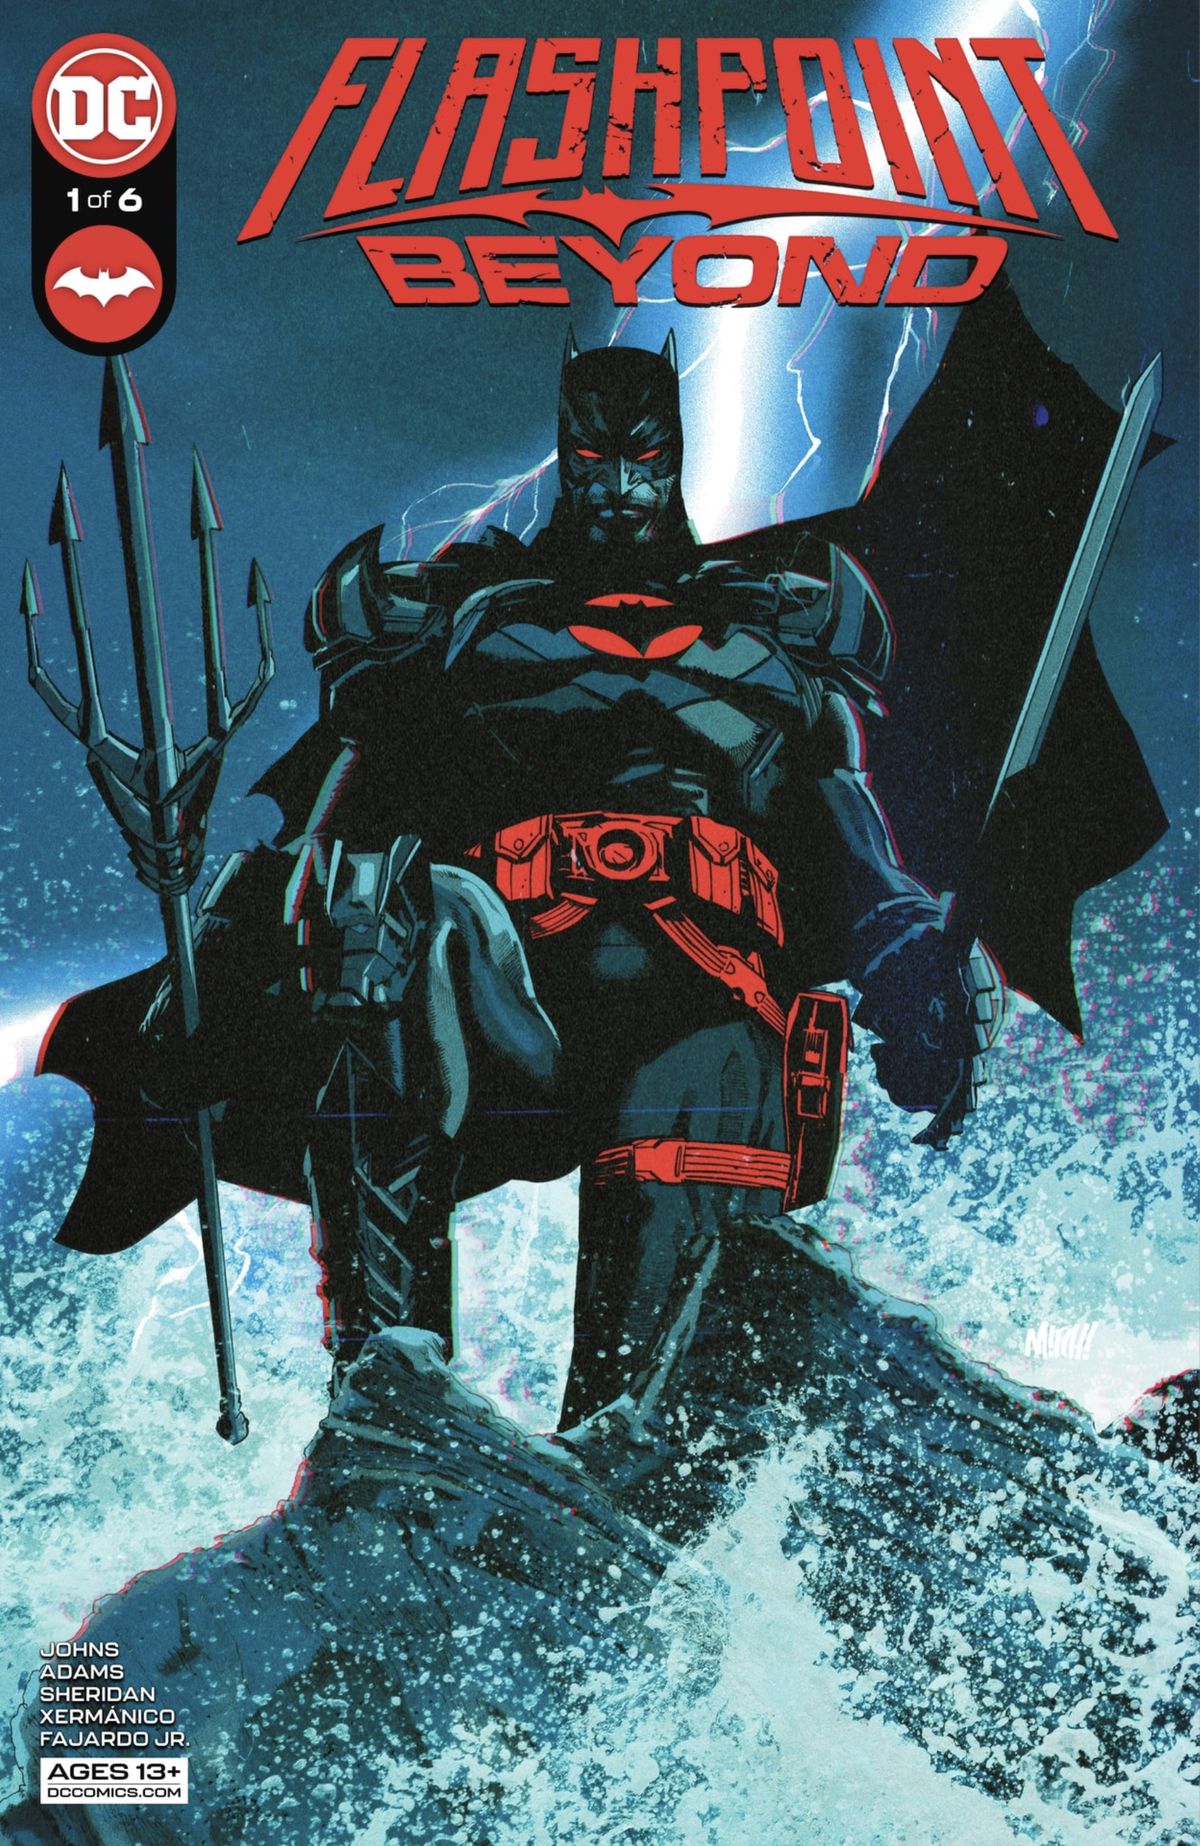 Batman (Thomas Wayne) si trova spaventosamente sulle rocce tra le onde che si infrangono.  C'è un fulmine dietro di lui e tiene in mano il tridente di Aquaman sulla copertina di Flashpoint Beyond #1 (2022). 